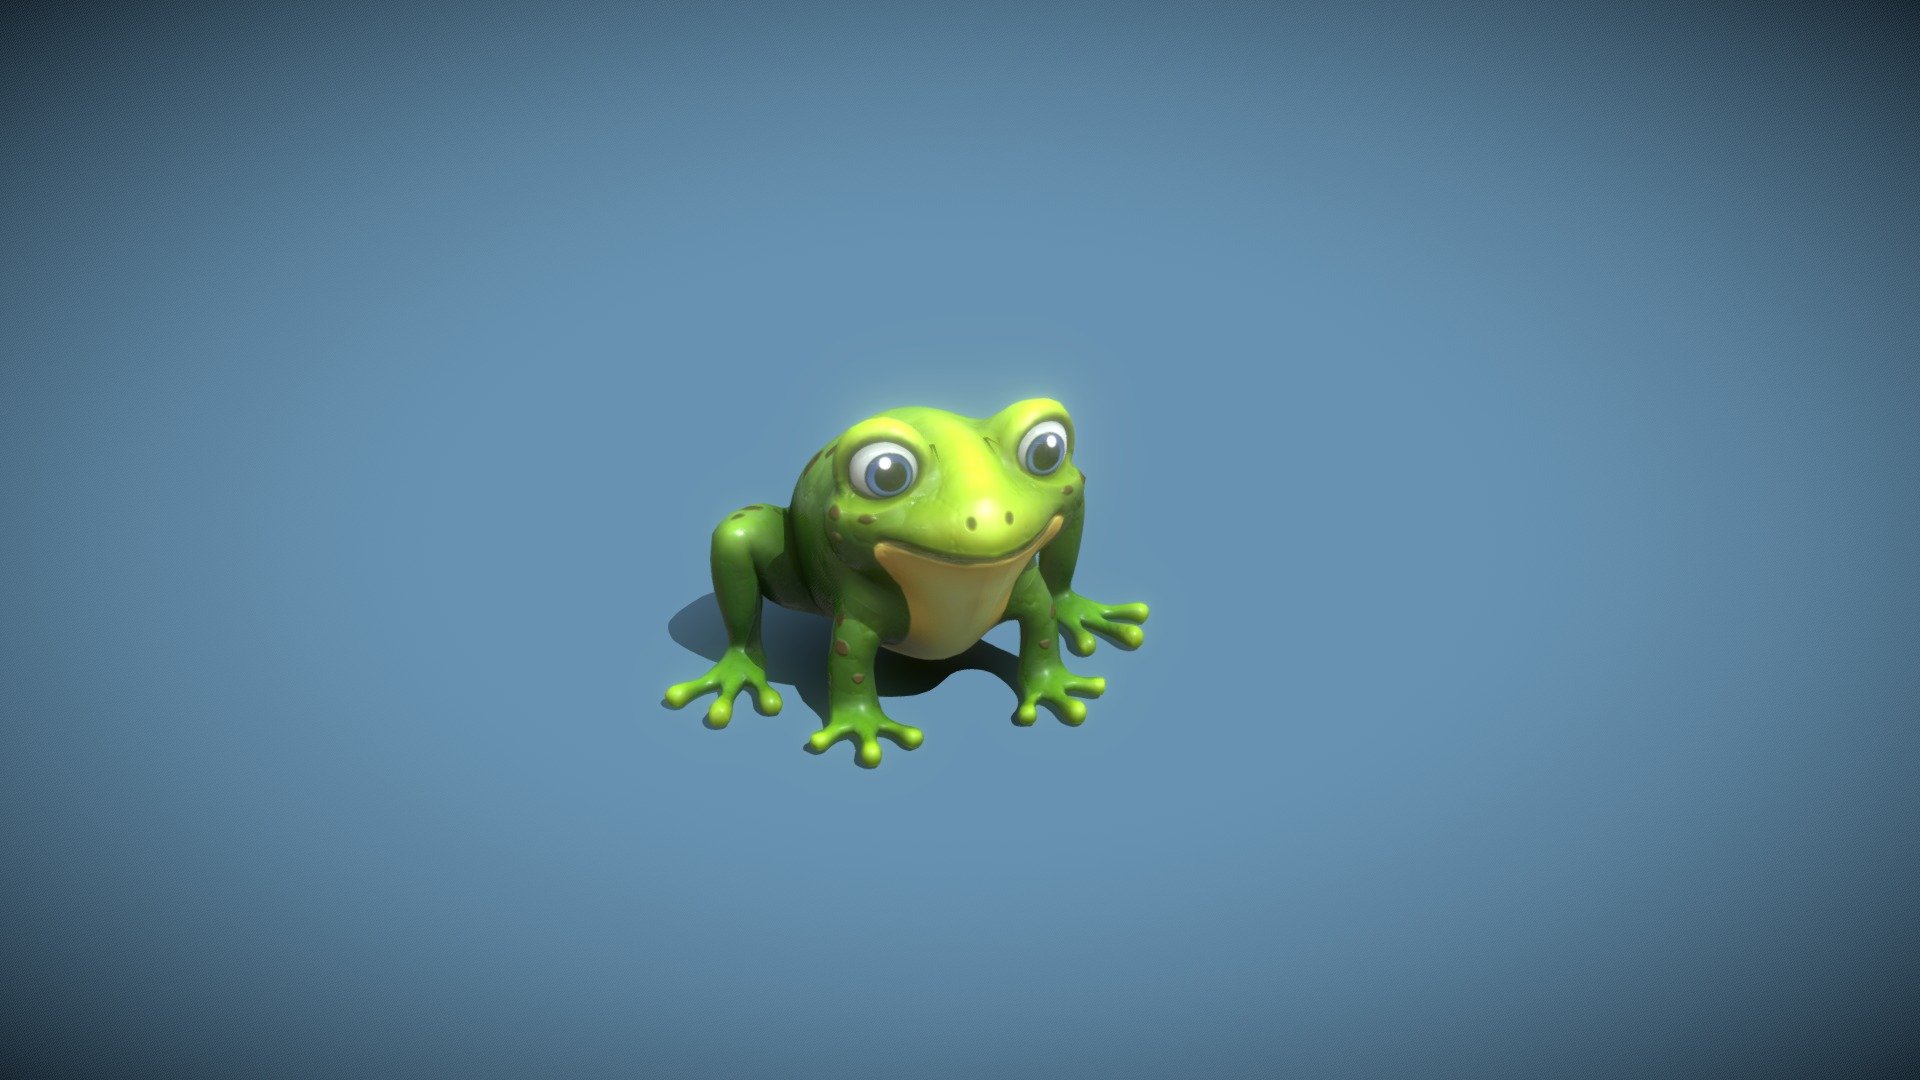 ArtStation - Cartoon Frog 3D Model